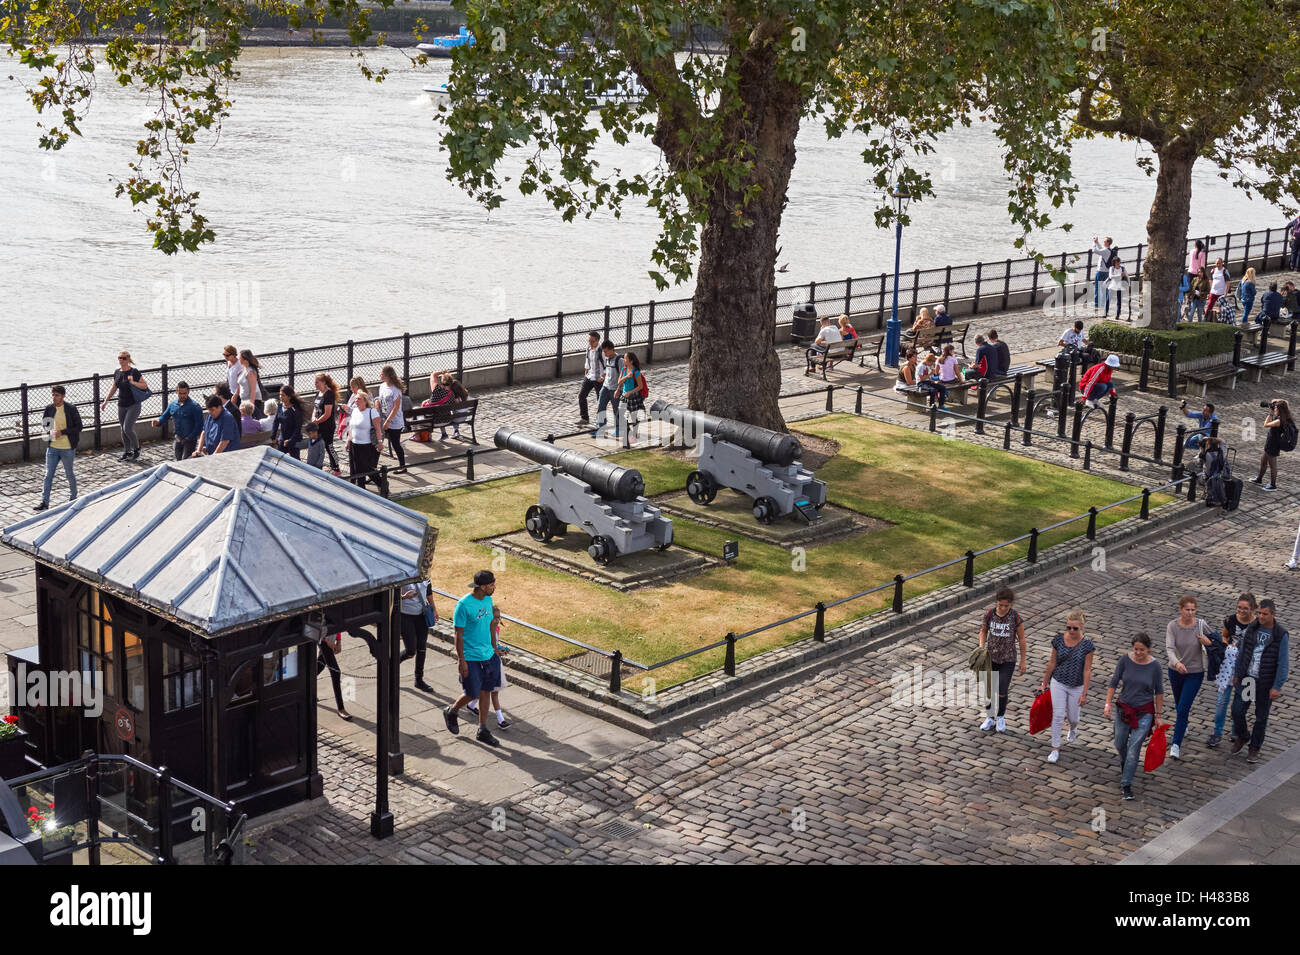 Les touristes à la Tour de Londres, Londres Angleterre Royaume-Uni UK Banque D'Images